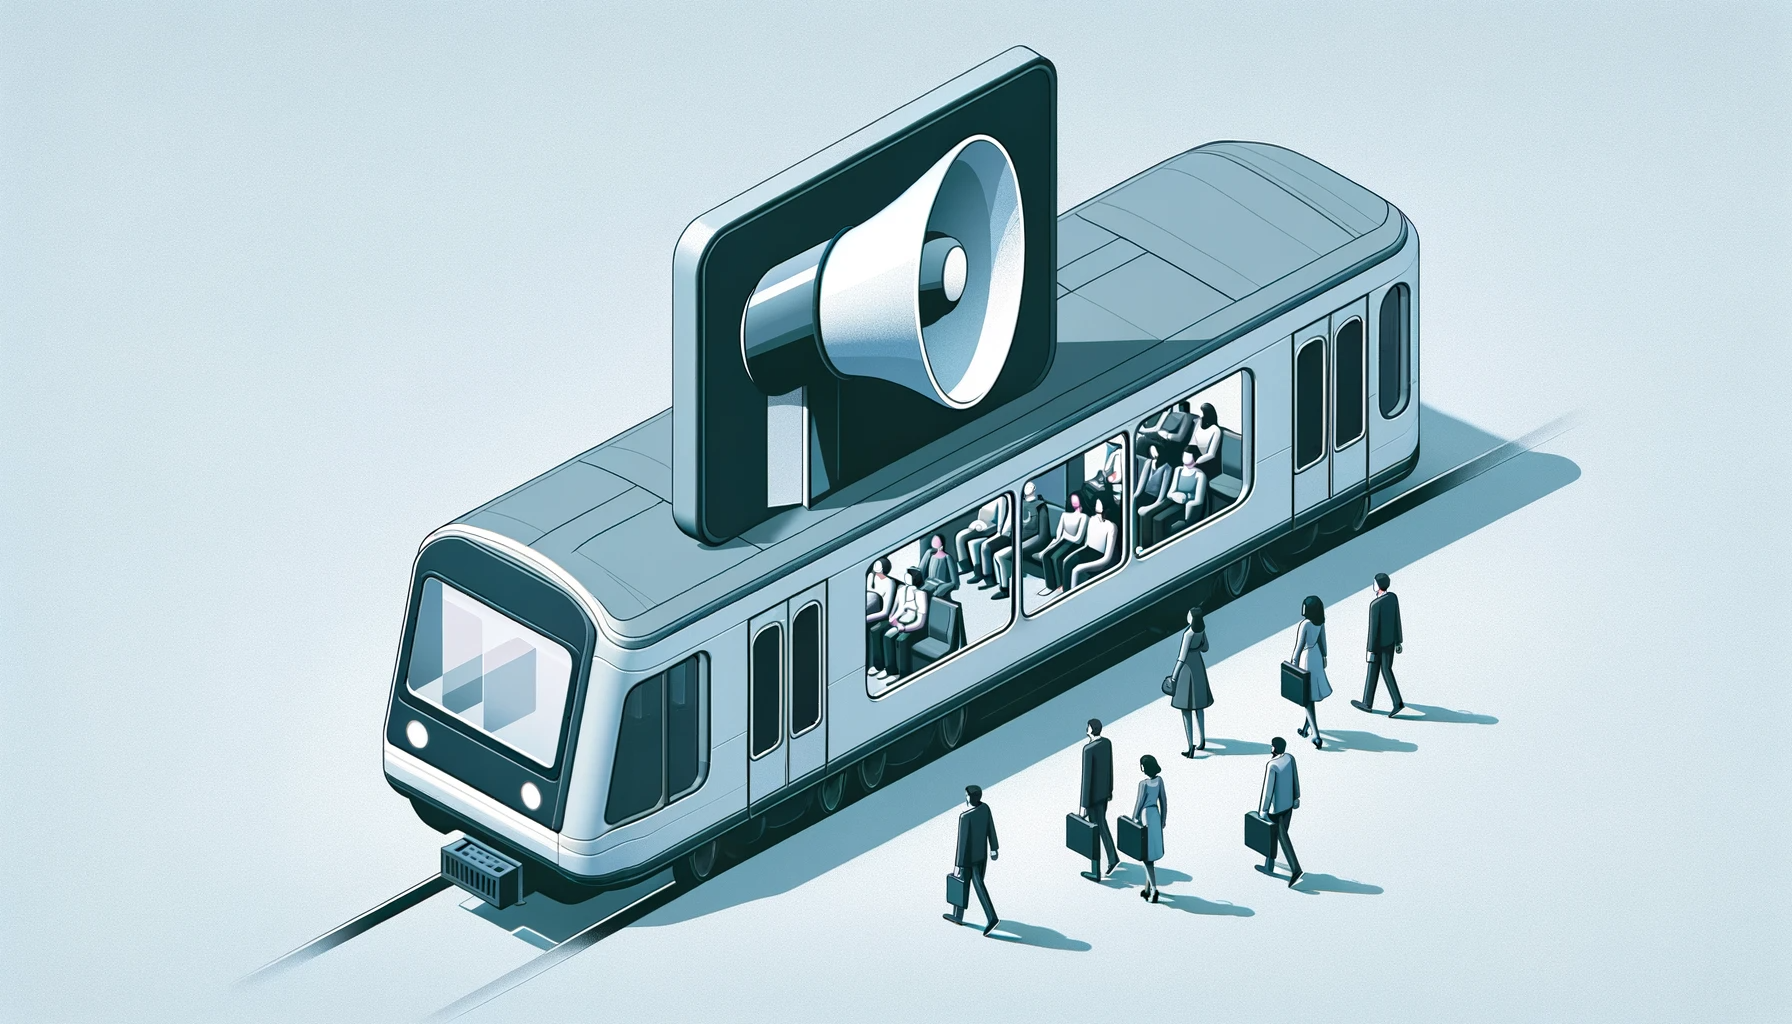 デリー地下鉄が地下鉄内で音声広告導入を発表。AOOHや移動中の音声広告の有用性とは